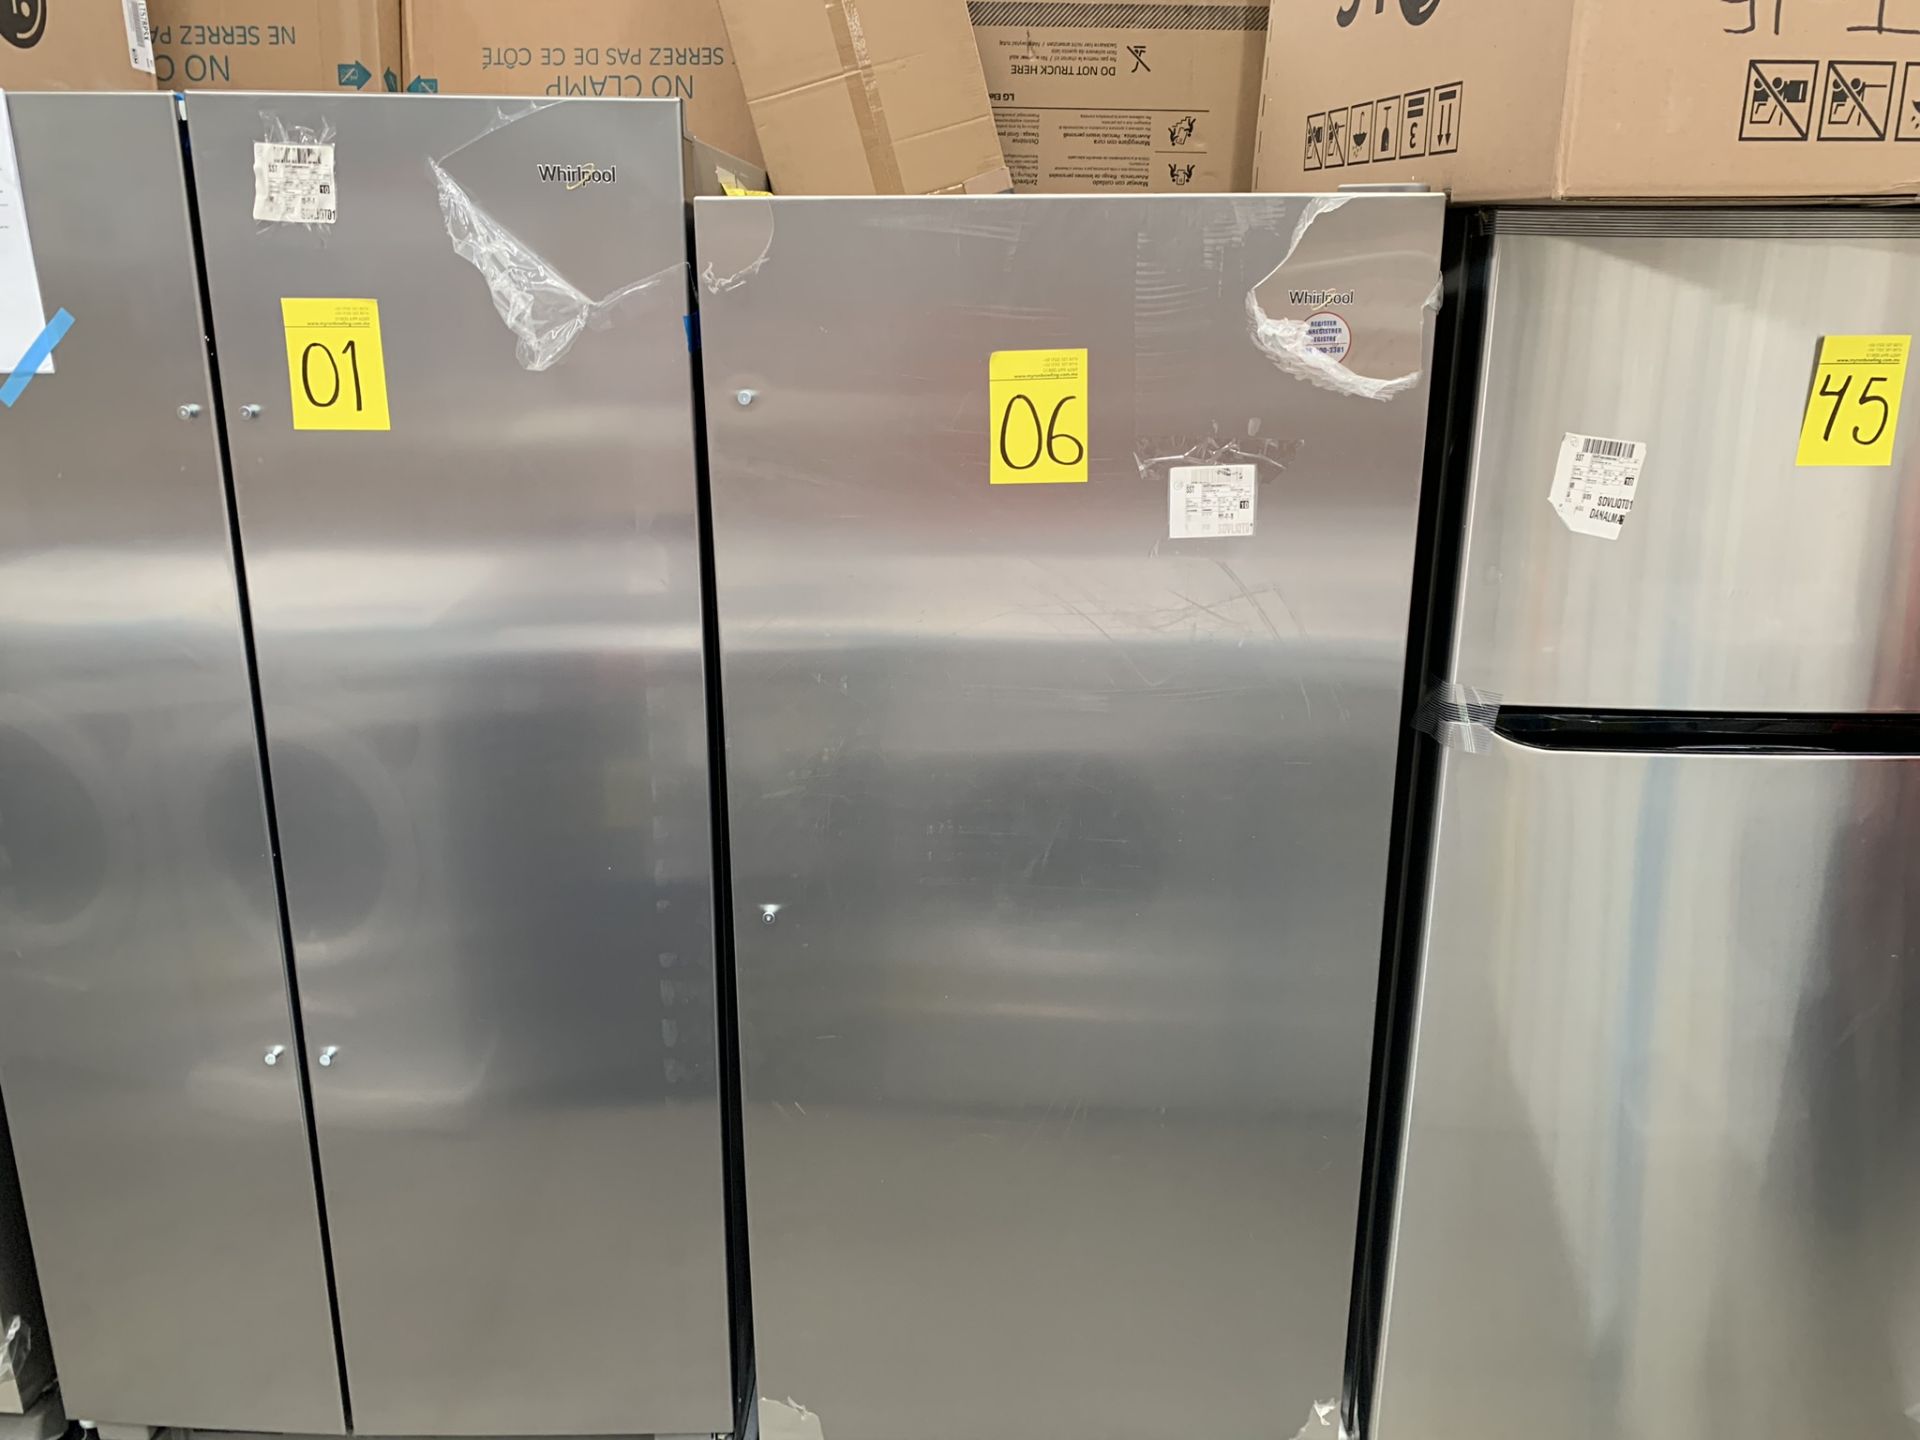 1 Refrigerador Marca Whirlpool, Modelo WSR57R18DM05, No de serie UB1703662 , Color Gris, LB-019111 - Image 2 of 8